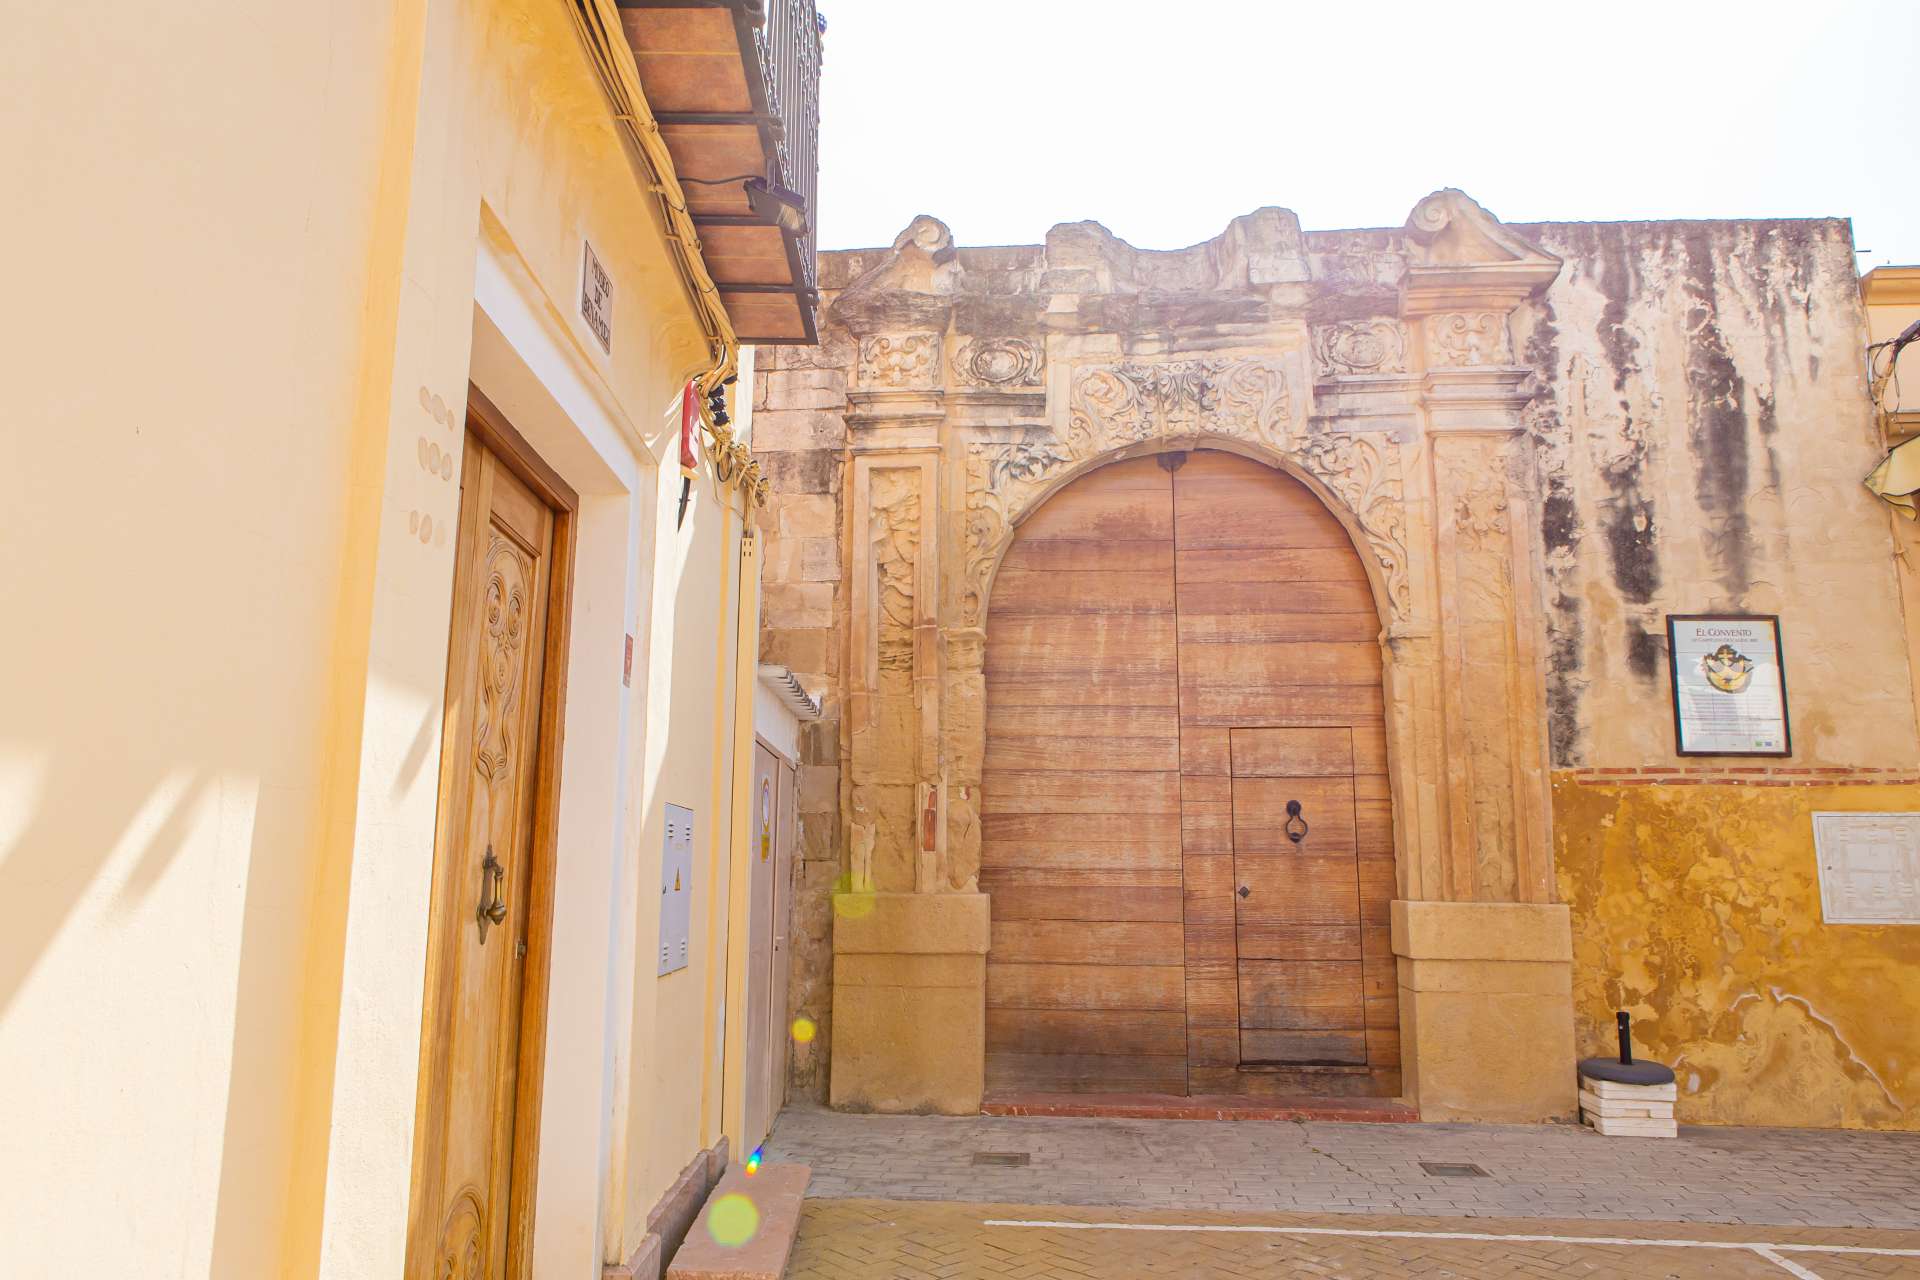 Façade of the former Nuestra Señora de los Remedios Convent (of the Discalced Carmelite Order).